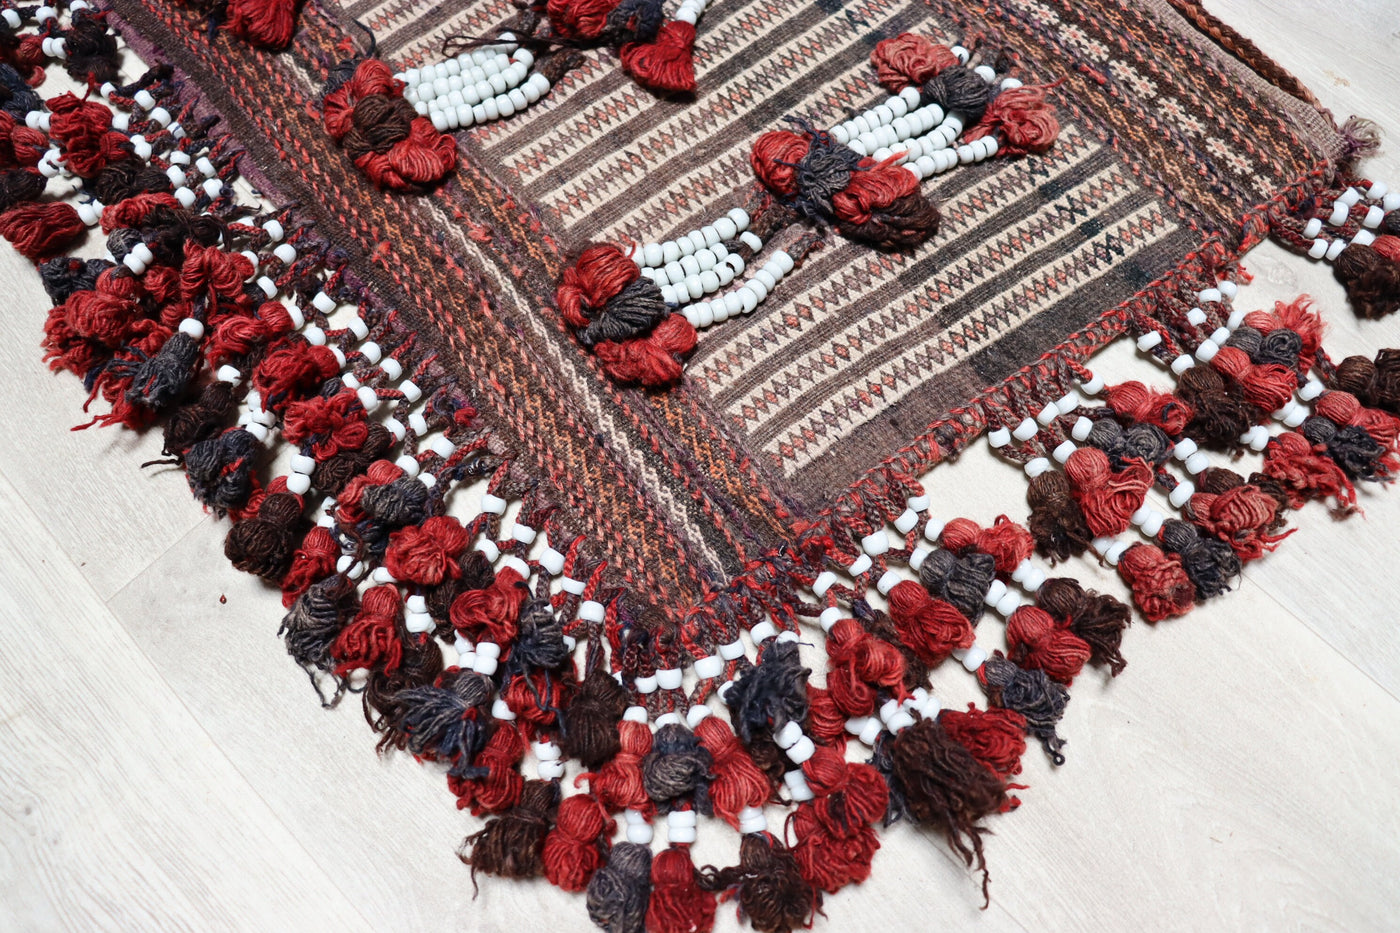 75x60 cm Antik und seltener Belutsch Nomaden Kuchi Zelttasche tasche Salztasche Torba aus Afghanistan  Nr:22/15 Teppiche Orientsbazar   